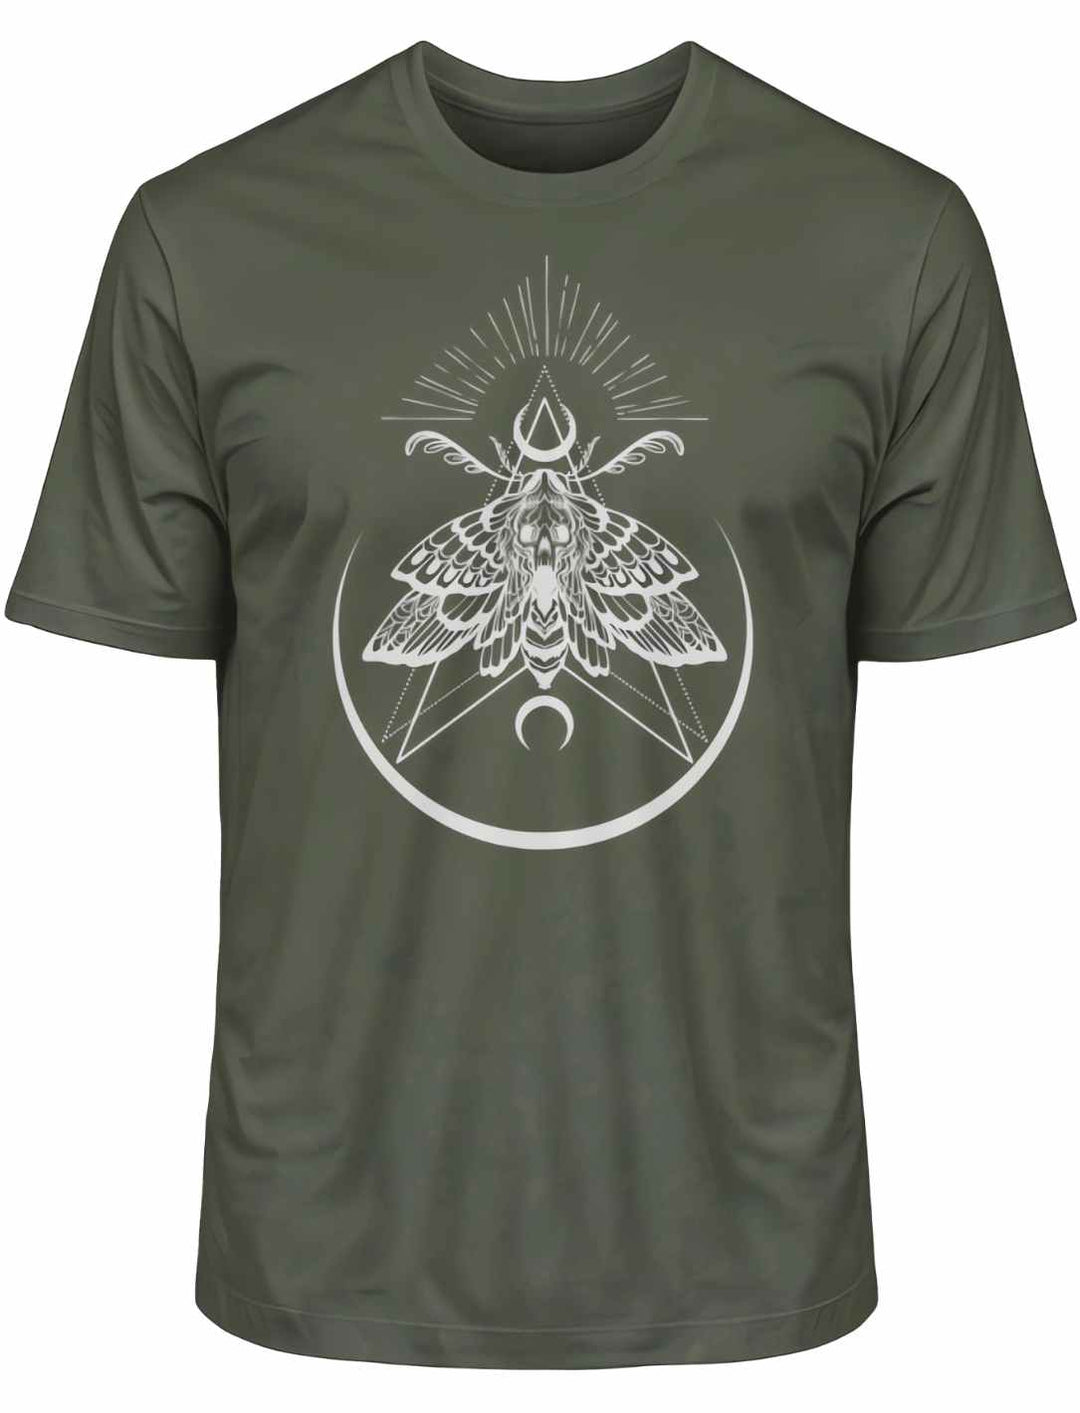 Khaki T-Shirt 'Lichtbringer der Verwandlung' mit Nachtfalter-Print, ausgestellt liegend auf weißem Hintergrund